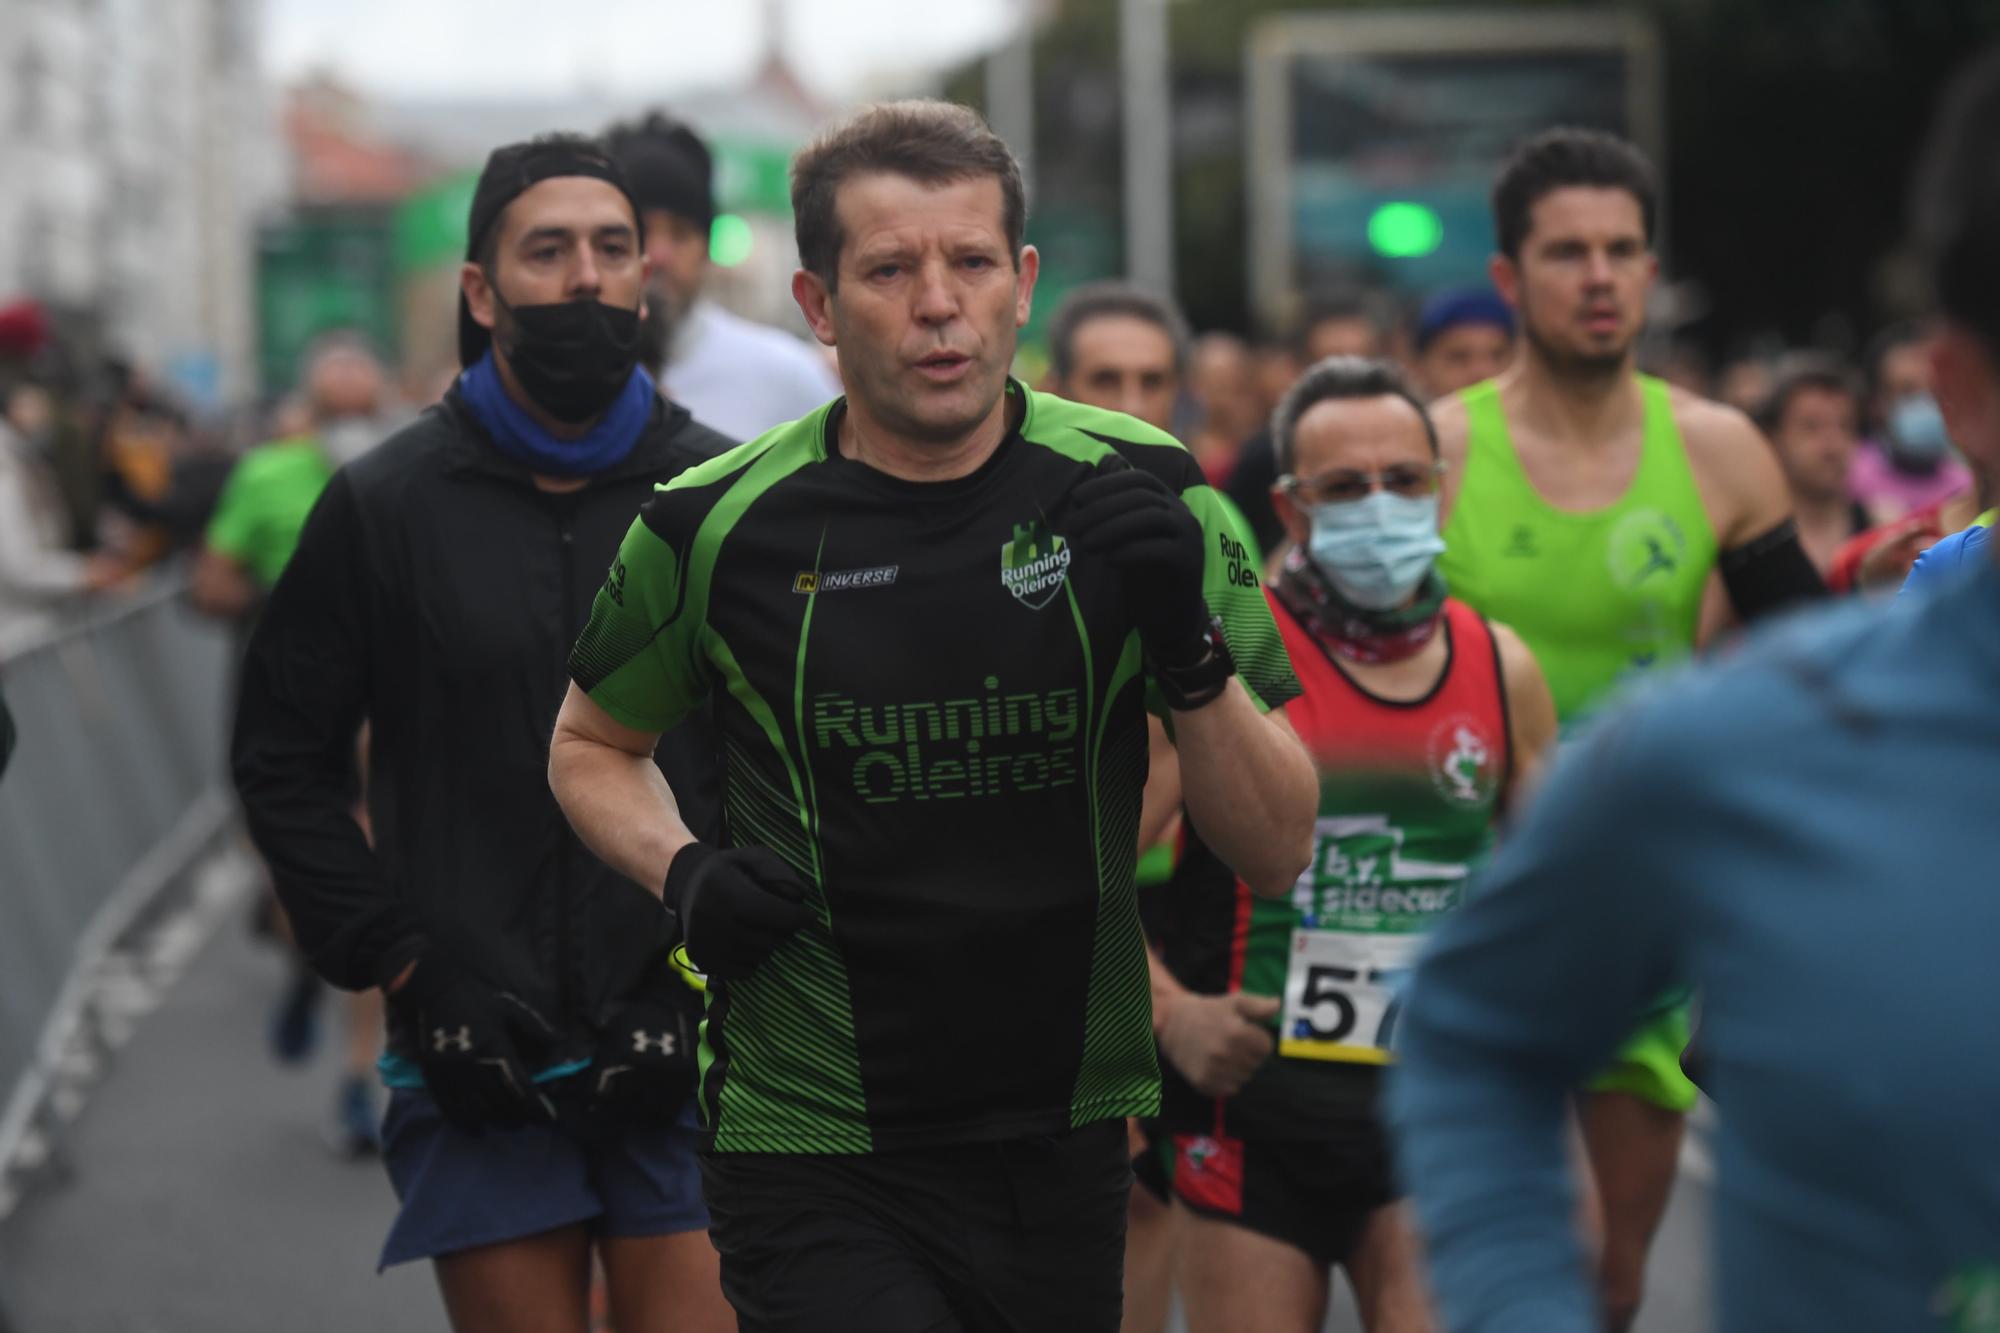 CORUÑA 21 | Búscate en la galería del Medio Maratón de A Coruña